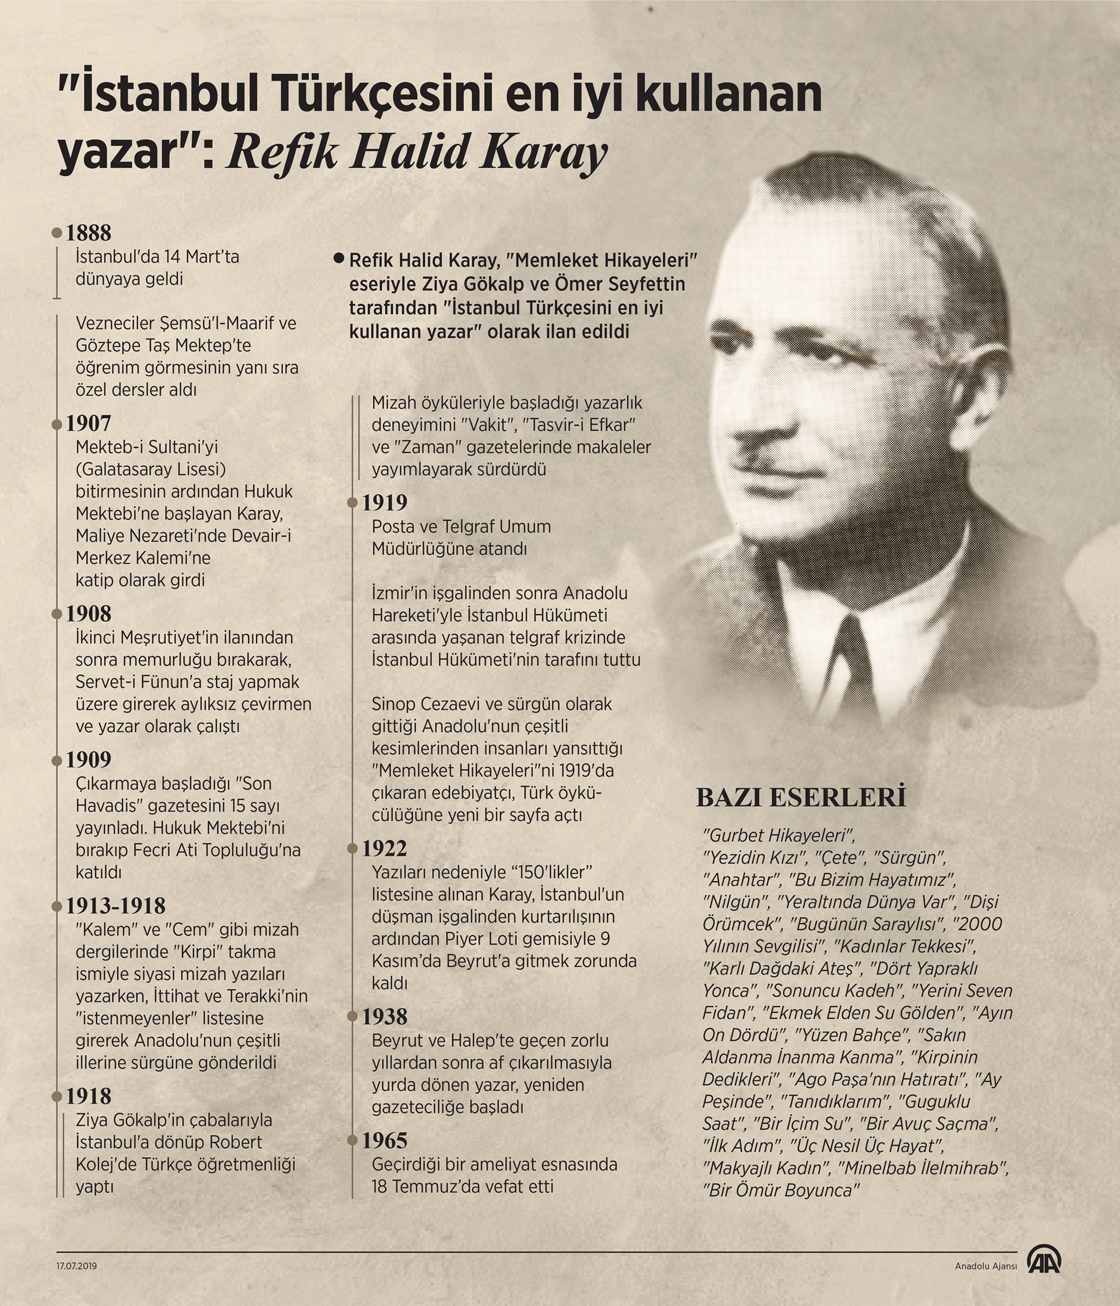 İstanbul Türkçesini en iyi kullanan yazar: Refik Halid Karay